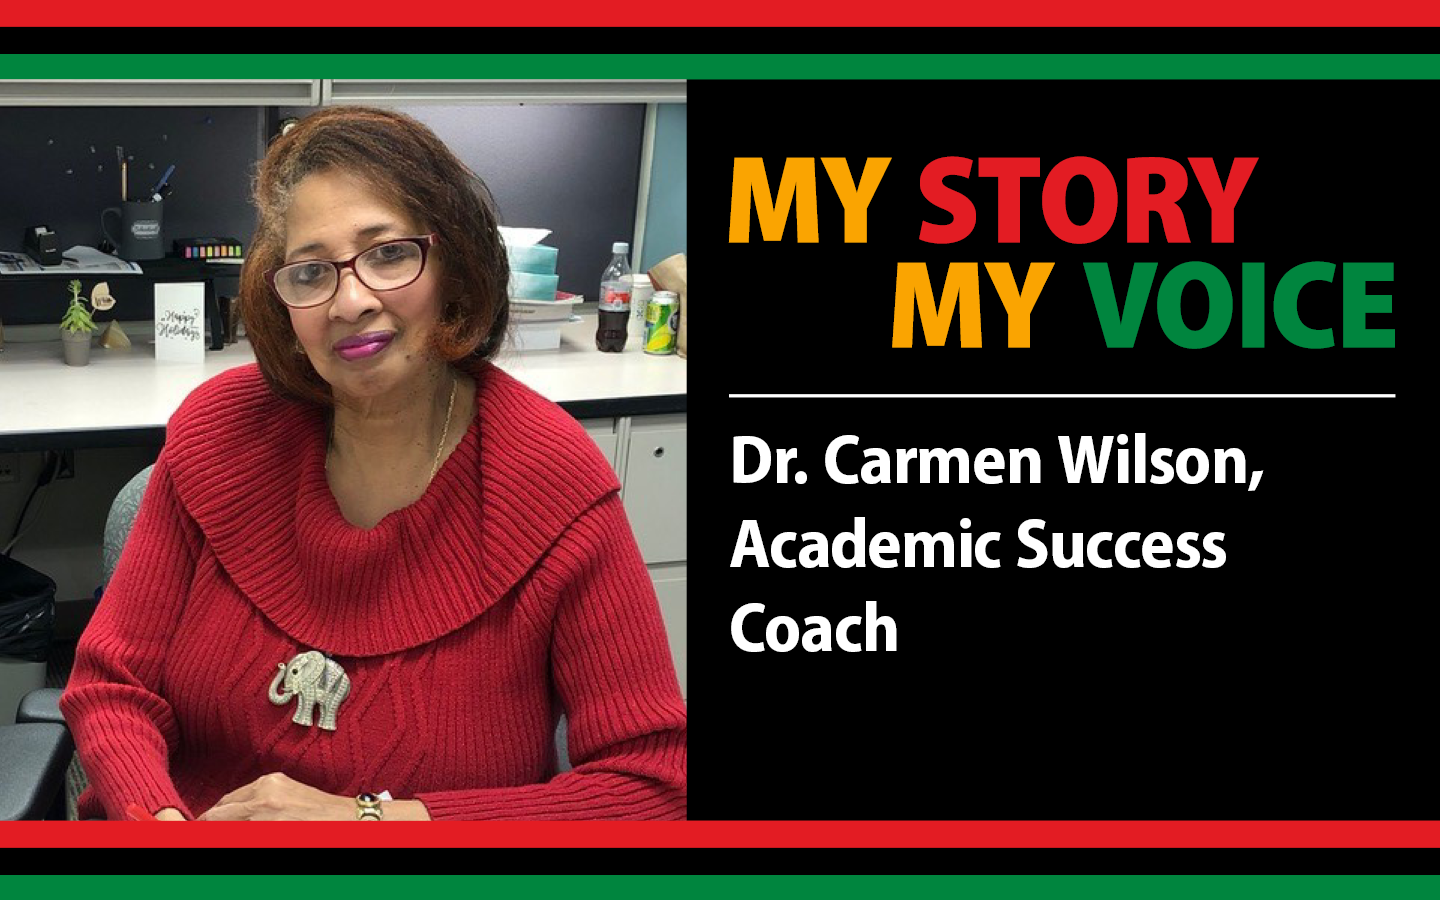 Dr. Carmen Wilson